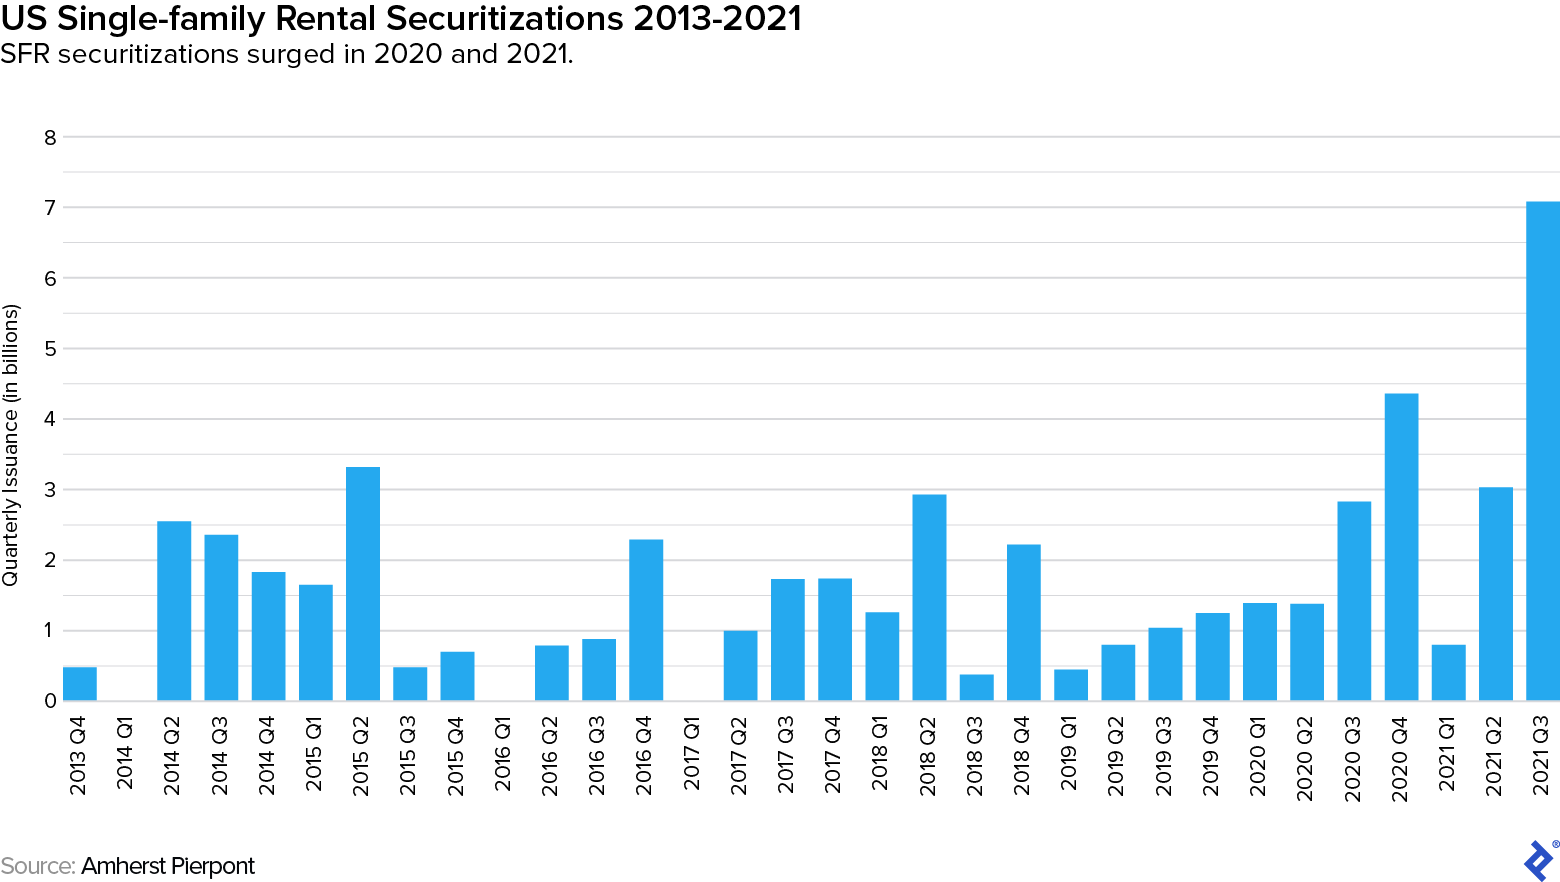 显示从2013年第四季度到2021年第三季度SFR证券化季度发行额（以十亿计）的条形图。虽然上下有很多峰值，但2020年和2021年将大幅上升，超过70亿美元。